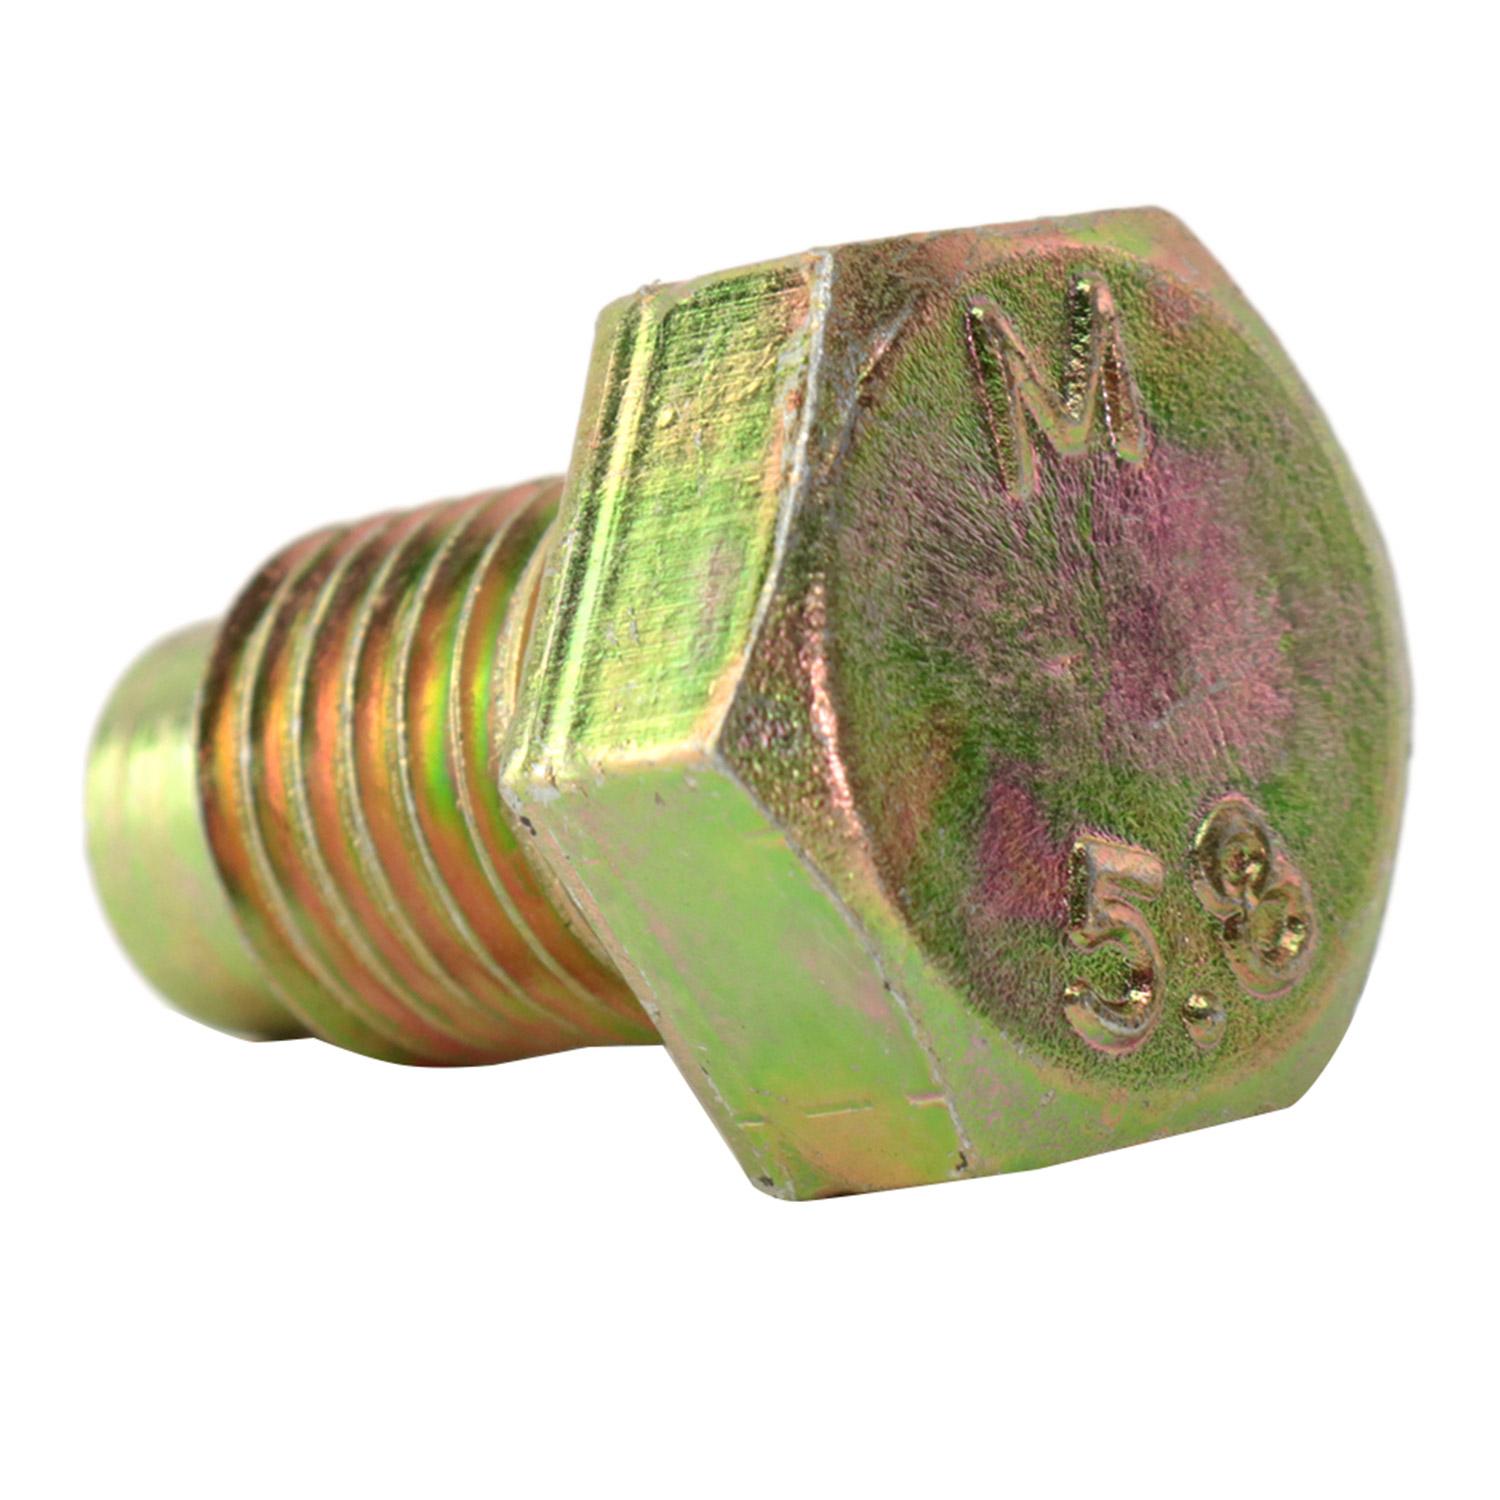 Miniature Hex Head Plug Brass